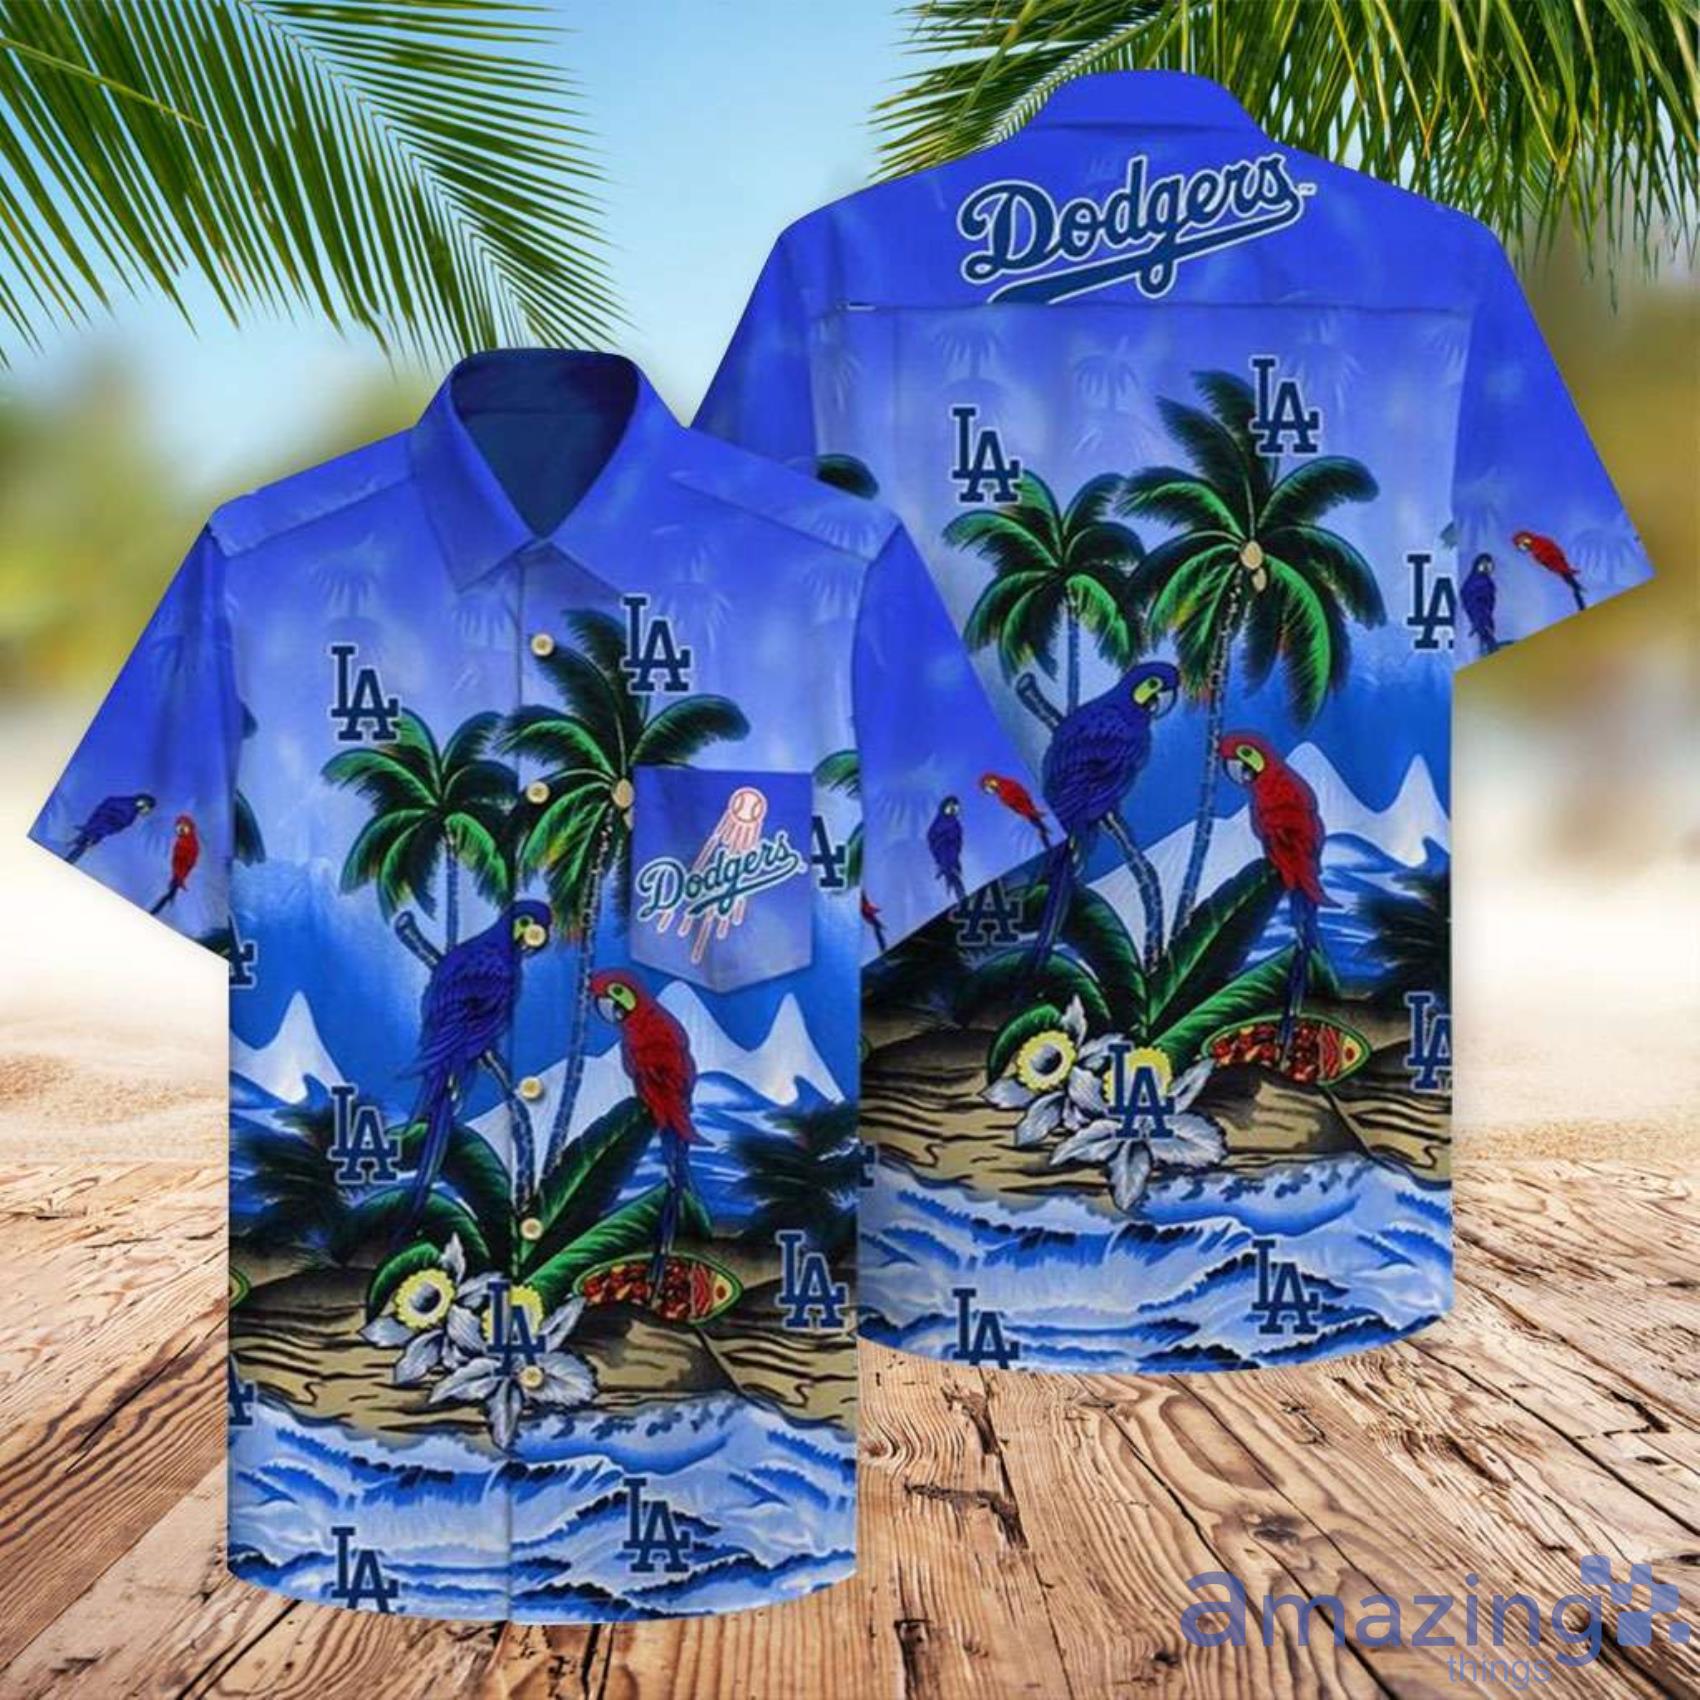 Dodgers Parrot Beach La Dodgers Men And Women Hawaiian Shirt Summer Gift